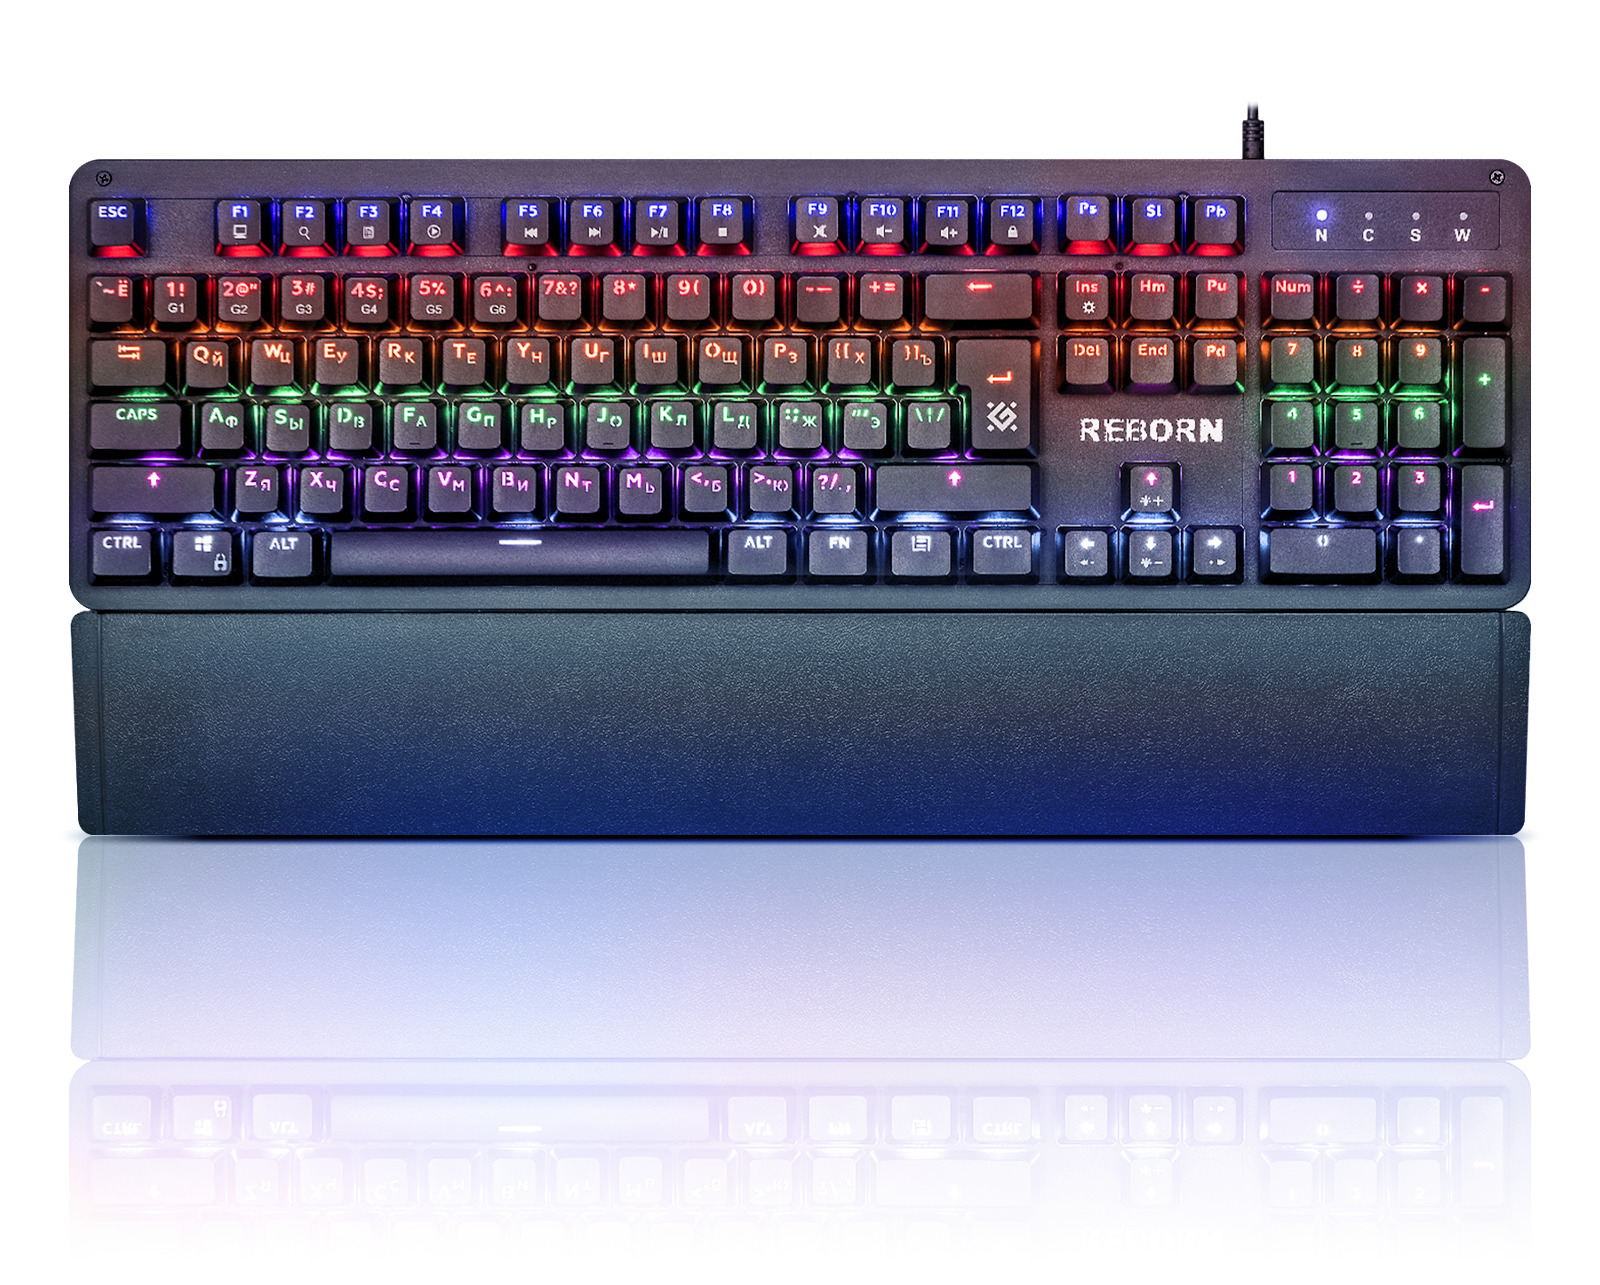 Проводная игровая клавиатура Defender Reborn GK-165DL Black (45165), купить в Москве, цены в интернет-магазинах на Мегамаркет